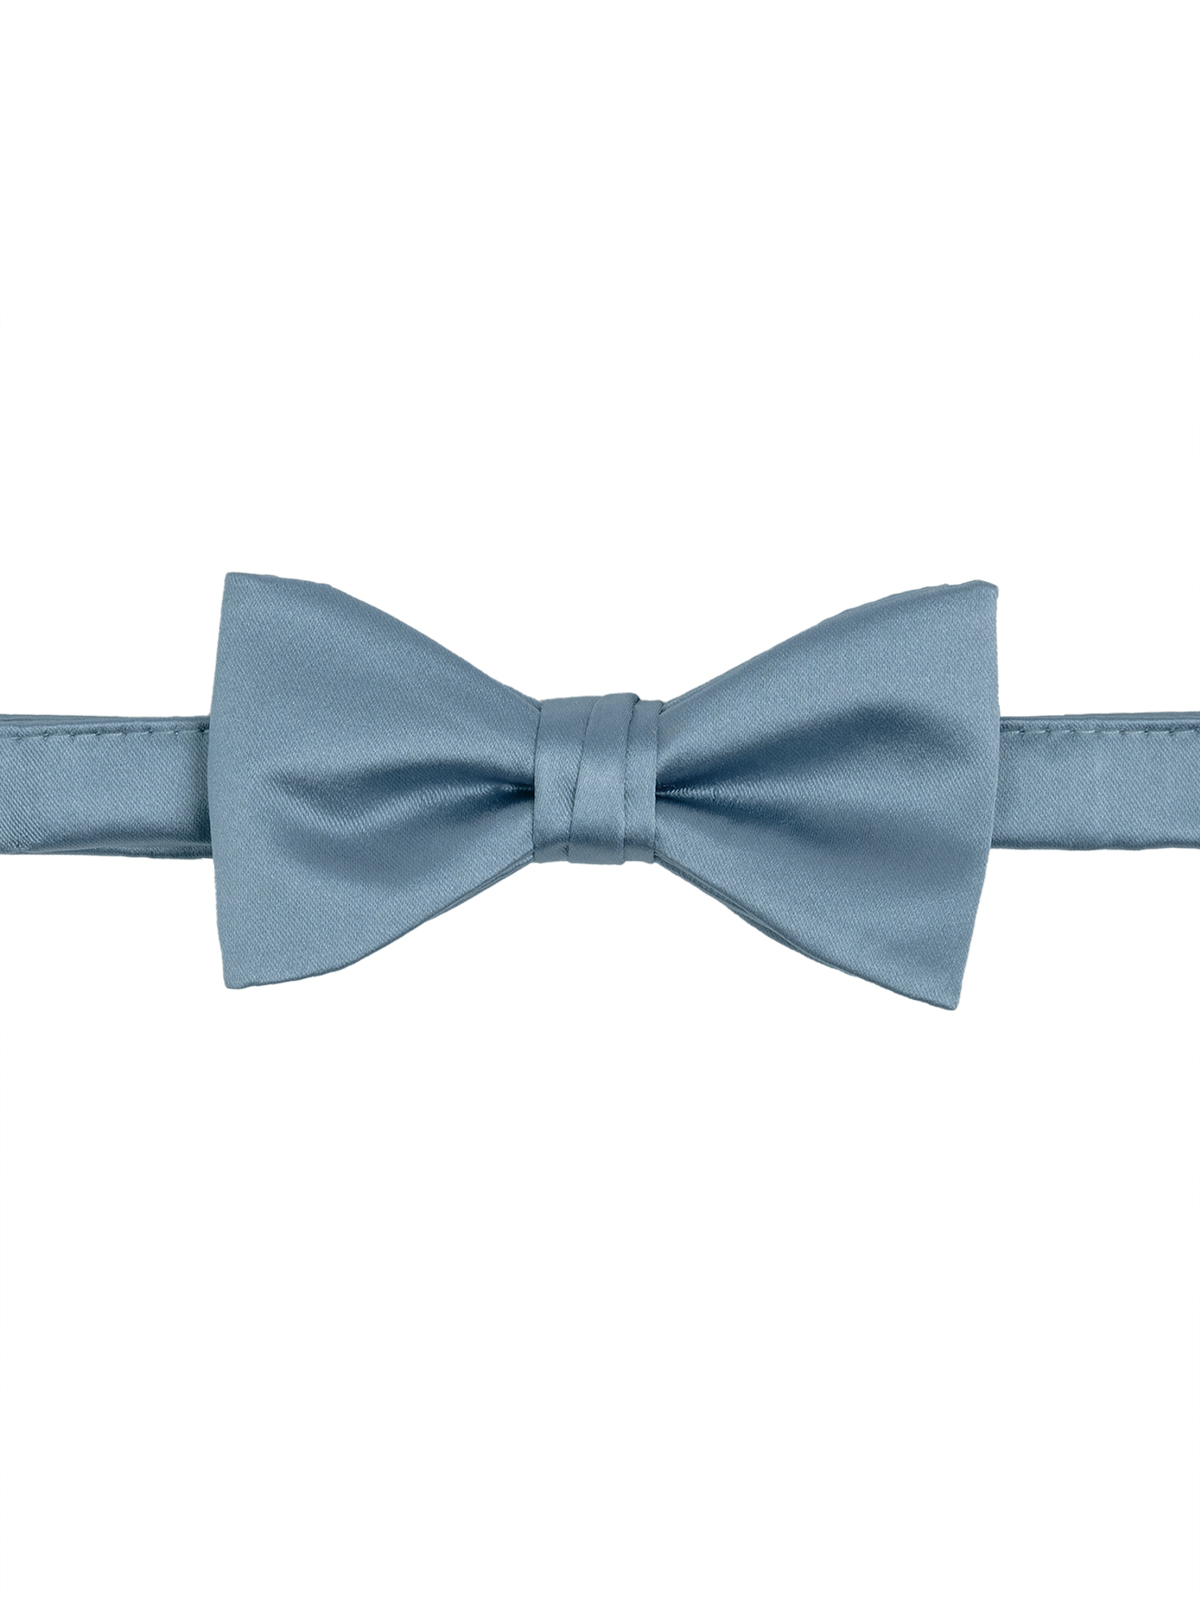 Men's Solid Satin Pre-Tied Bow Tie